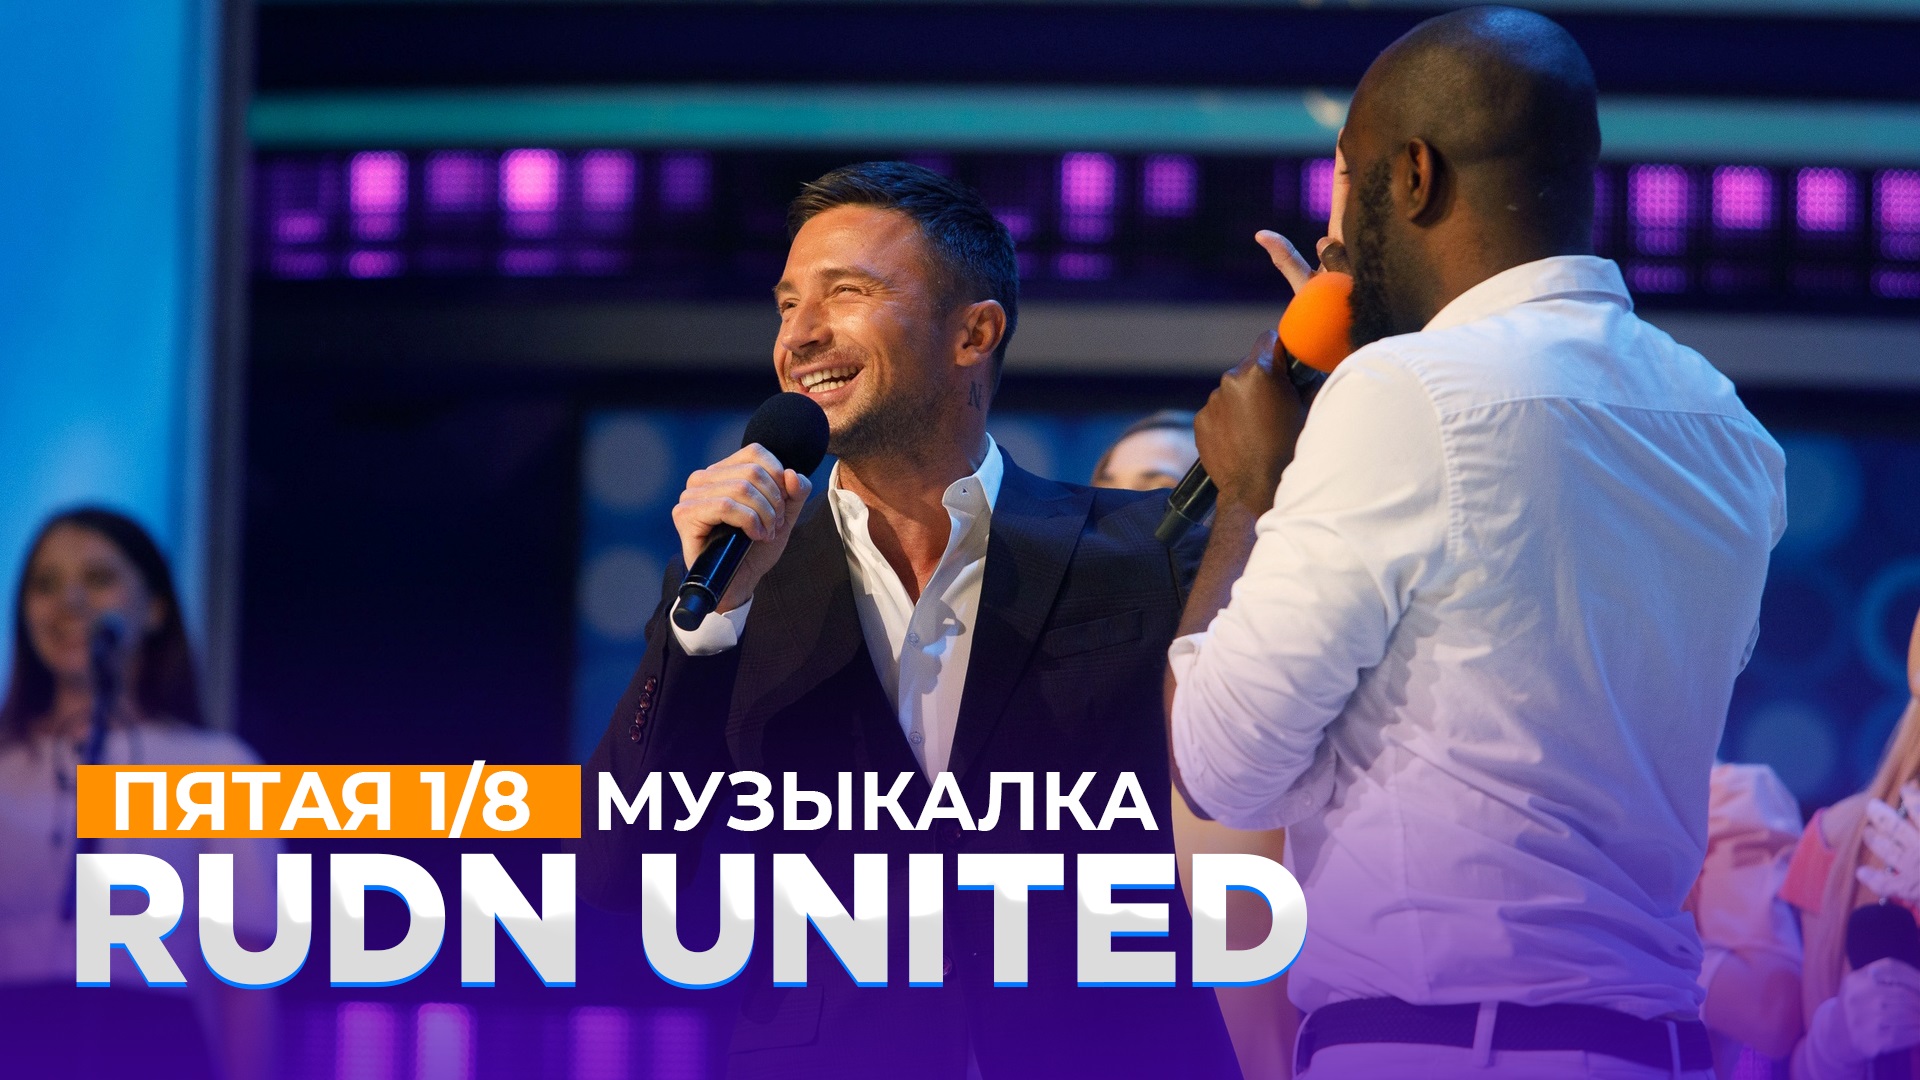 КВН 2021 Высшая лига - RUDN United Музыкалка с Сергеем Лазаревым